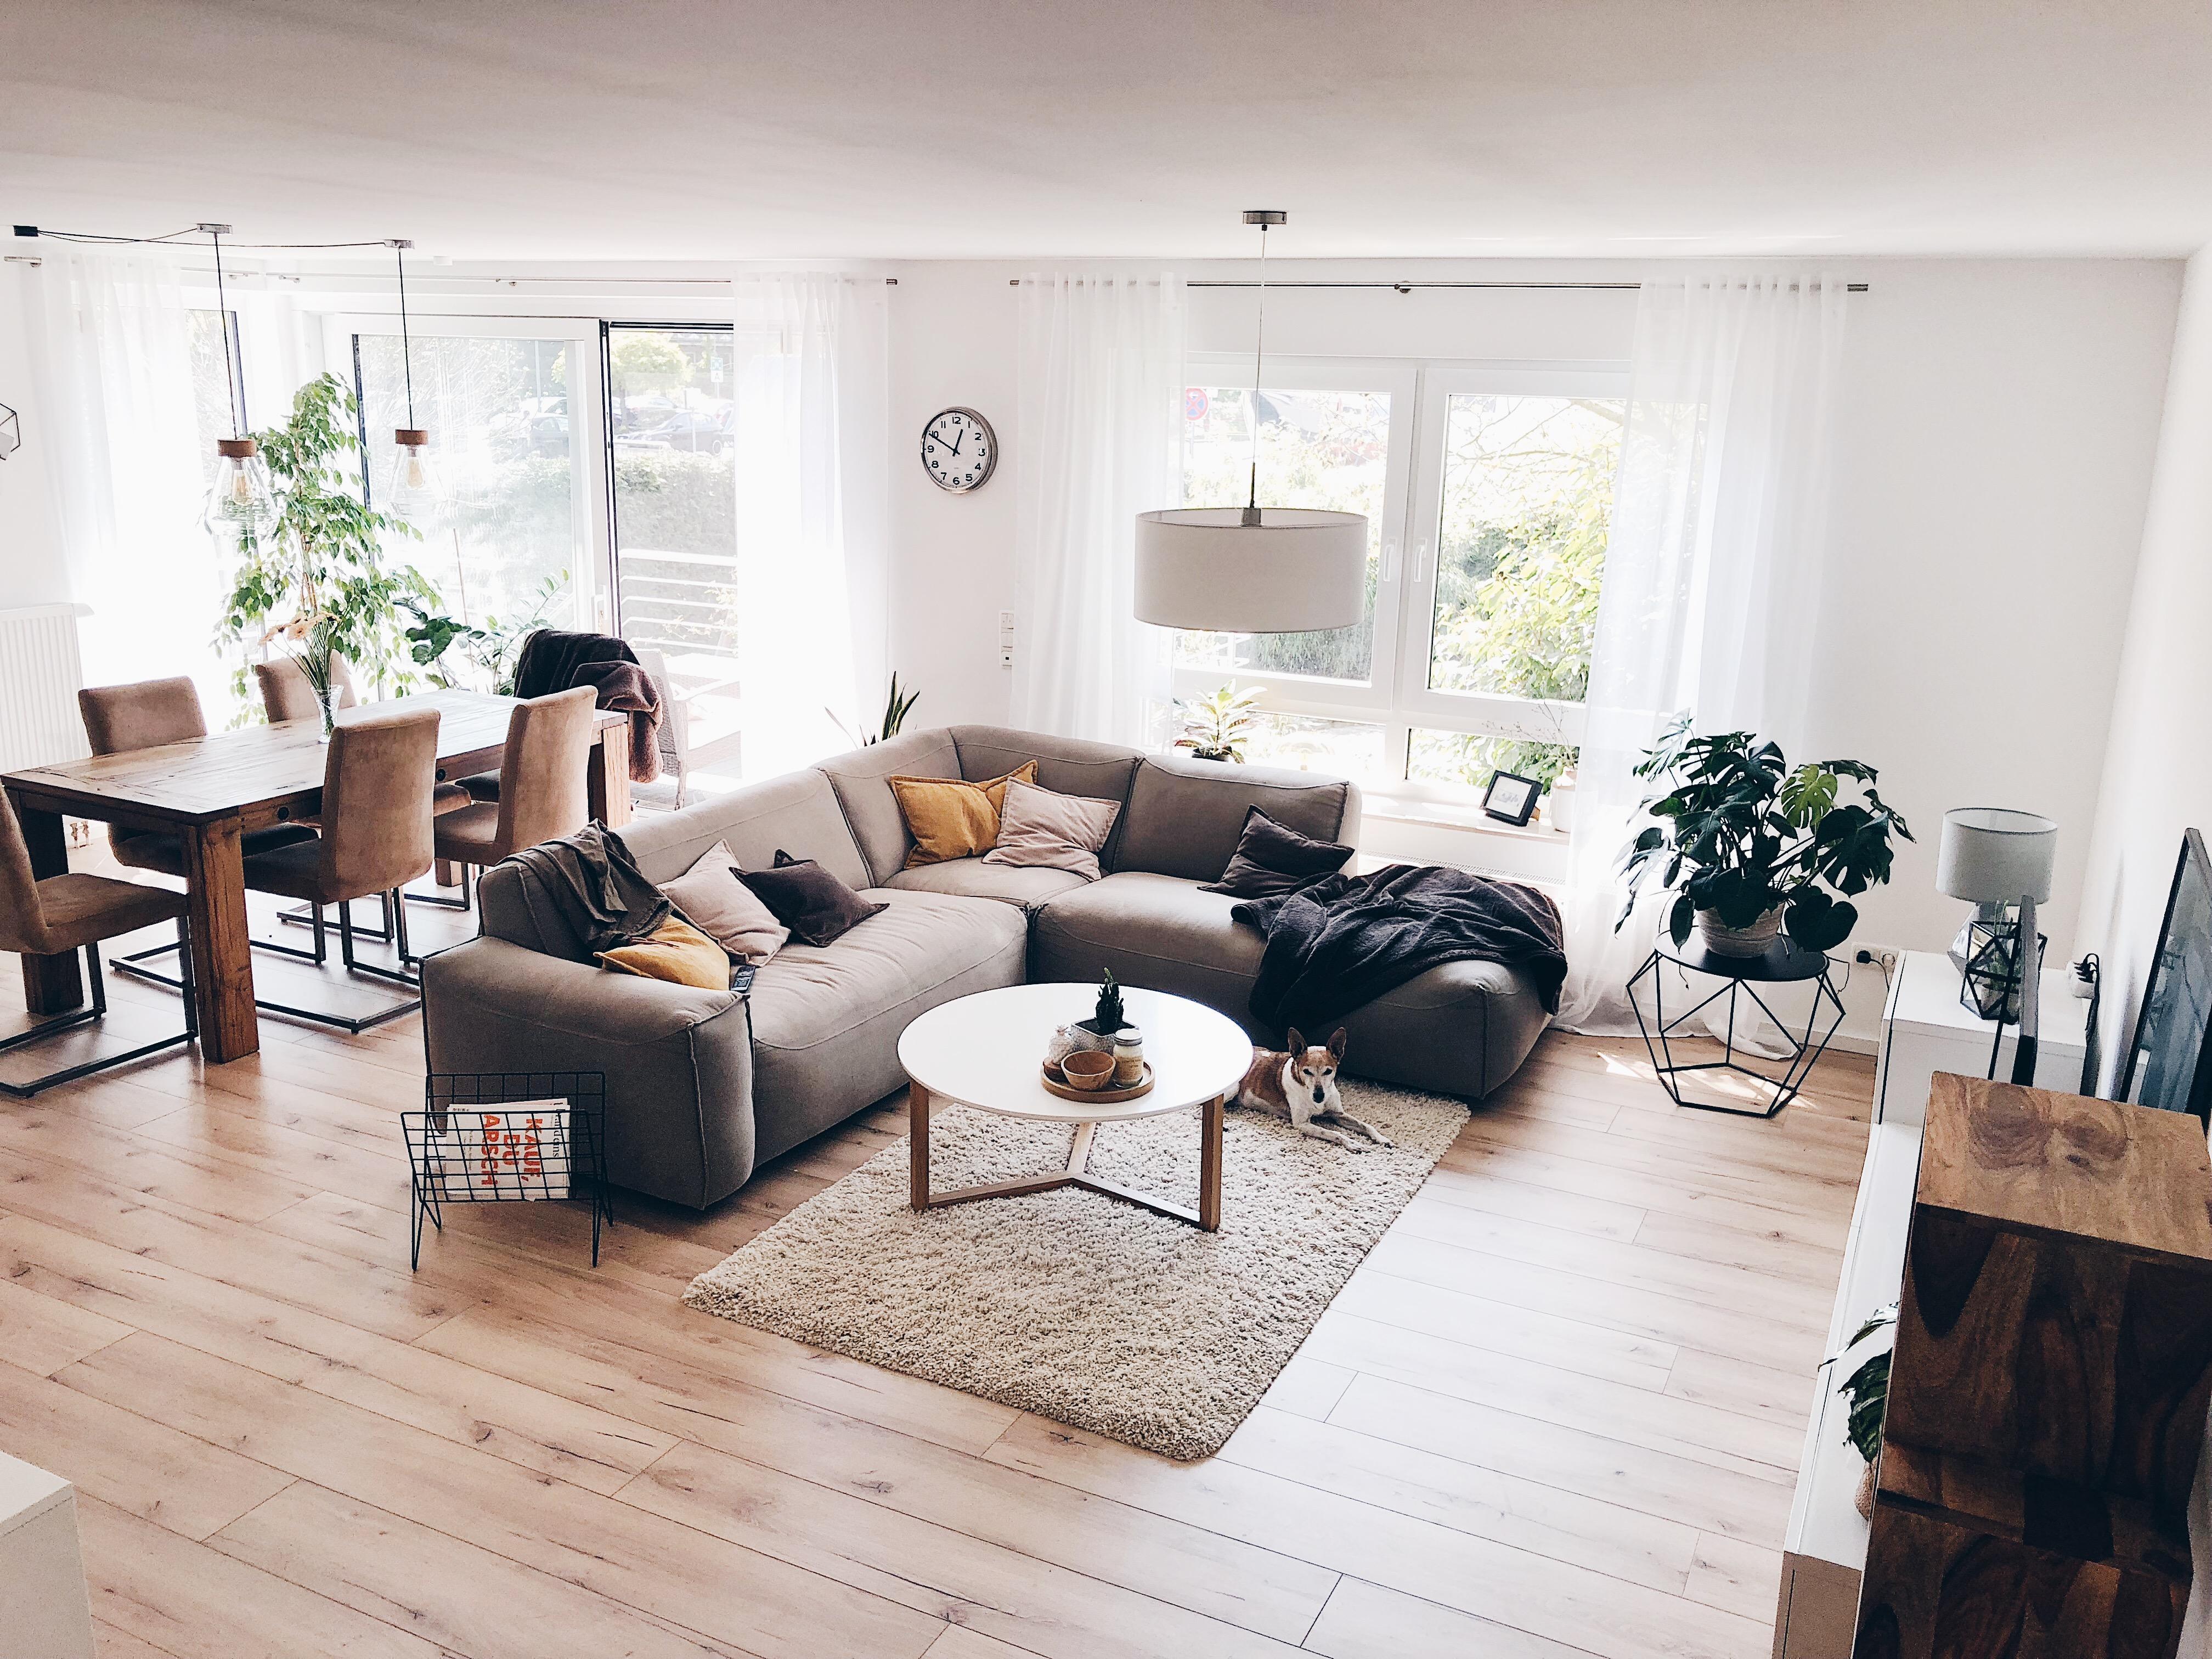 Willkommen in unserem #zuhause 🙌 #interior #interiordesign #wohnzimmer #homeandliving #urban #couch 